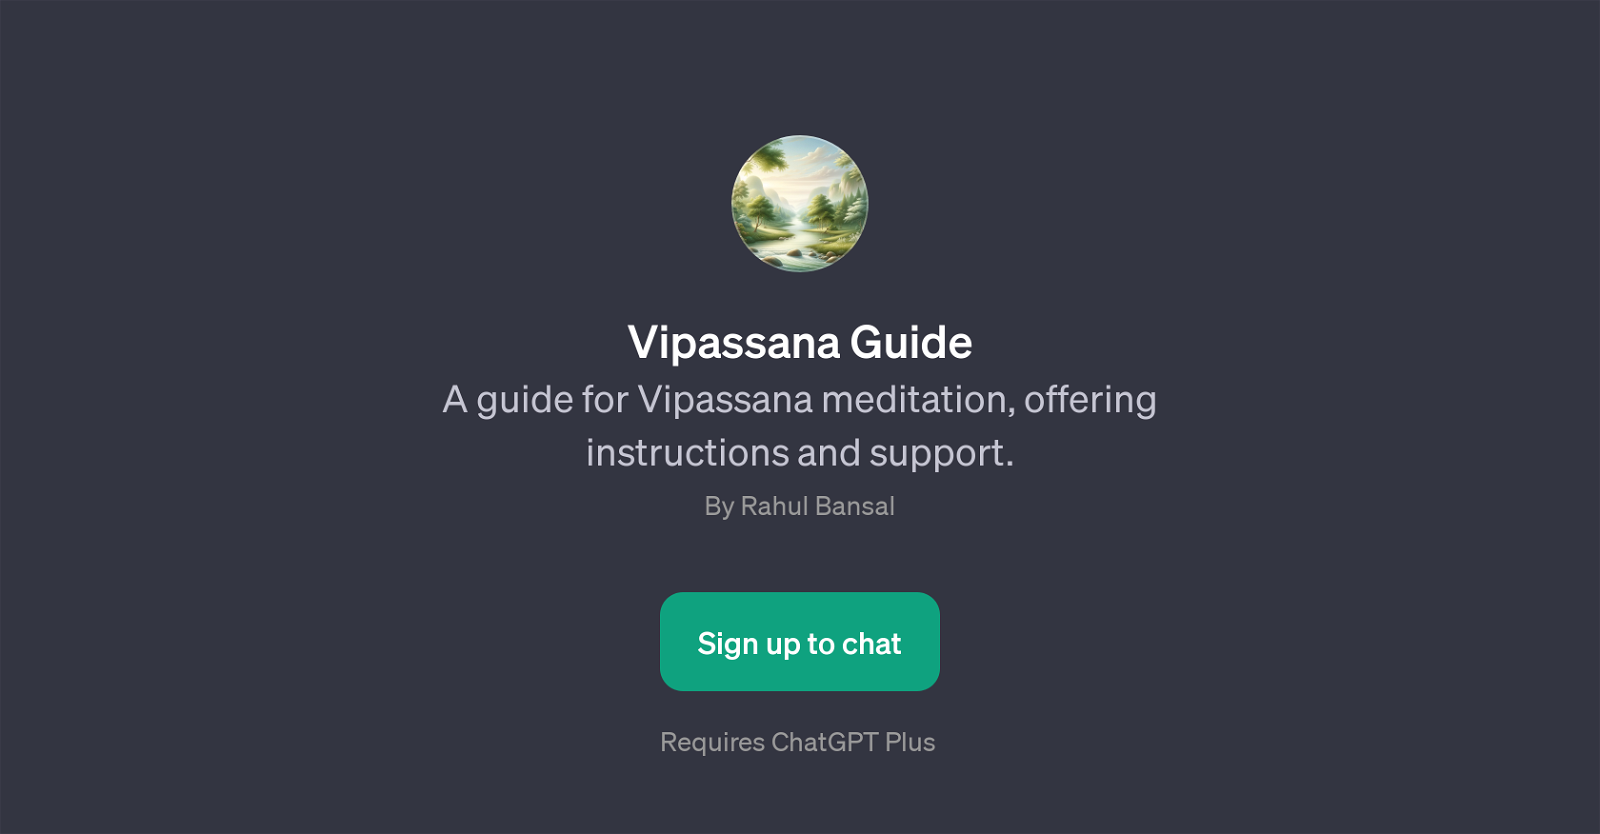 Vipassana Guide website